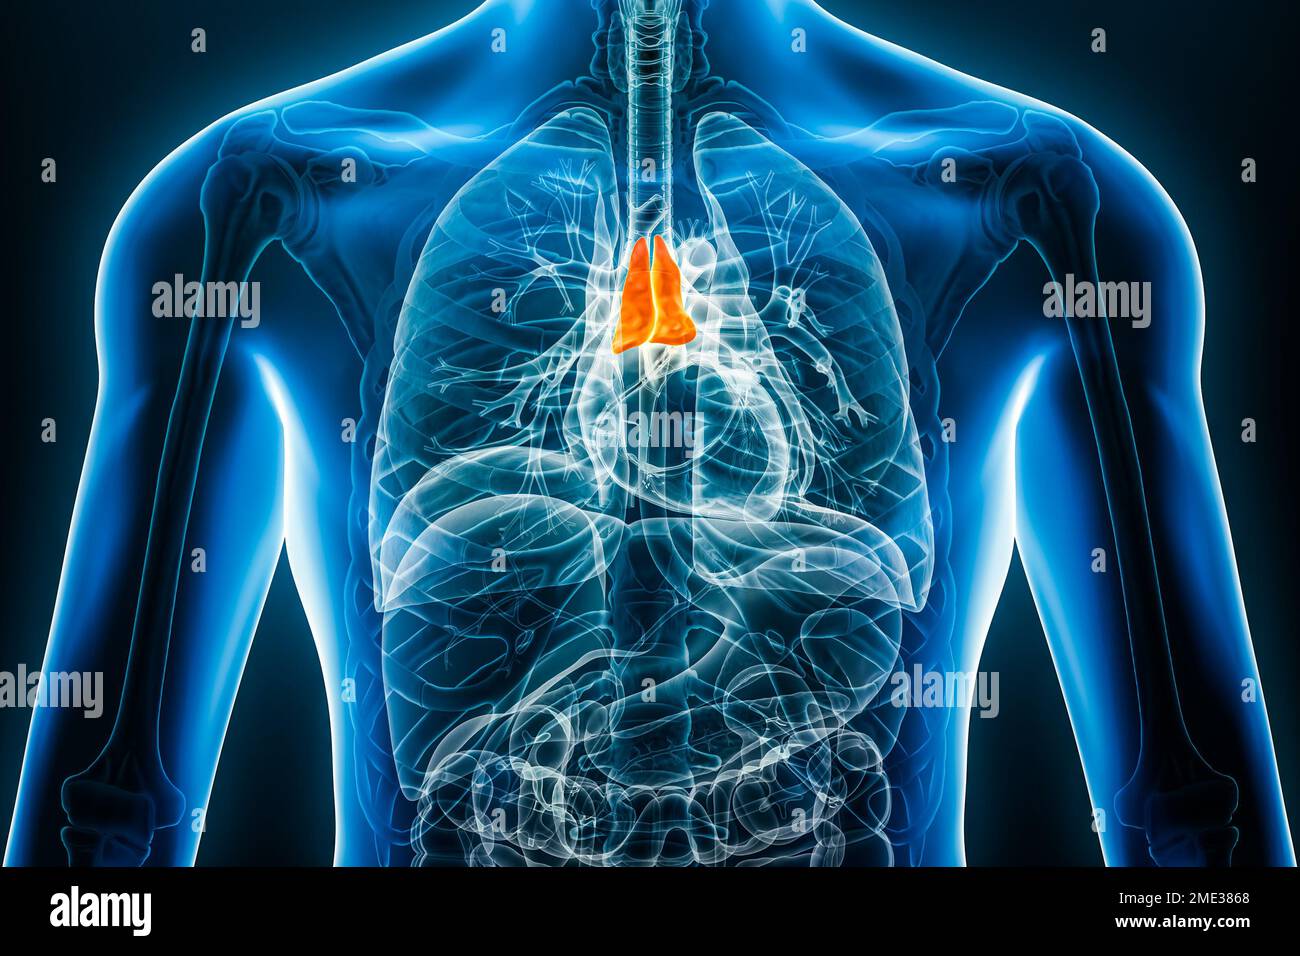 Immagine dell'organo interno 3D del timo radiogeno con contorni del corpo maschile. Anatomia umana, medicina, biologia, scienza, concetti sanitari. Foto Stock